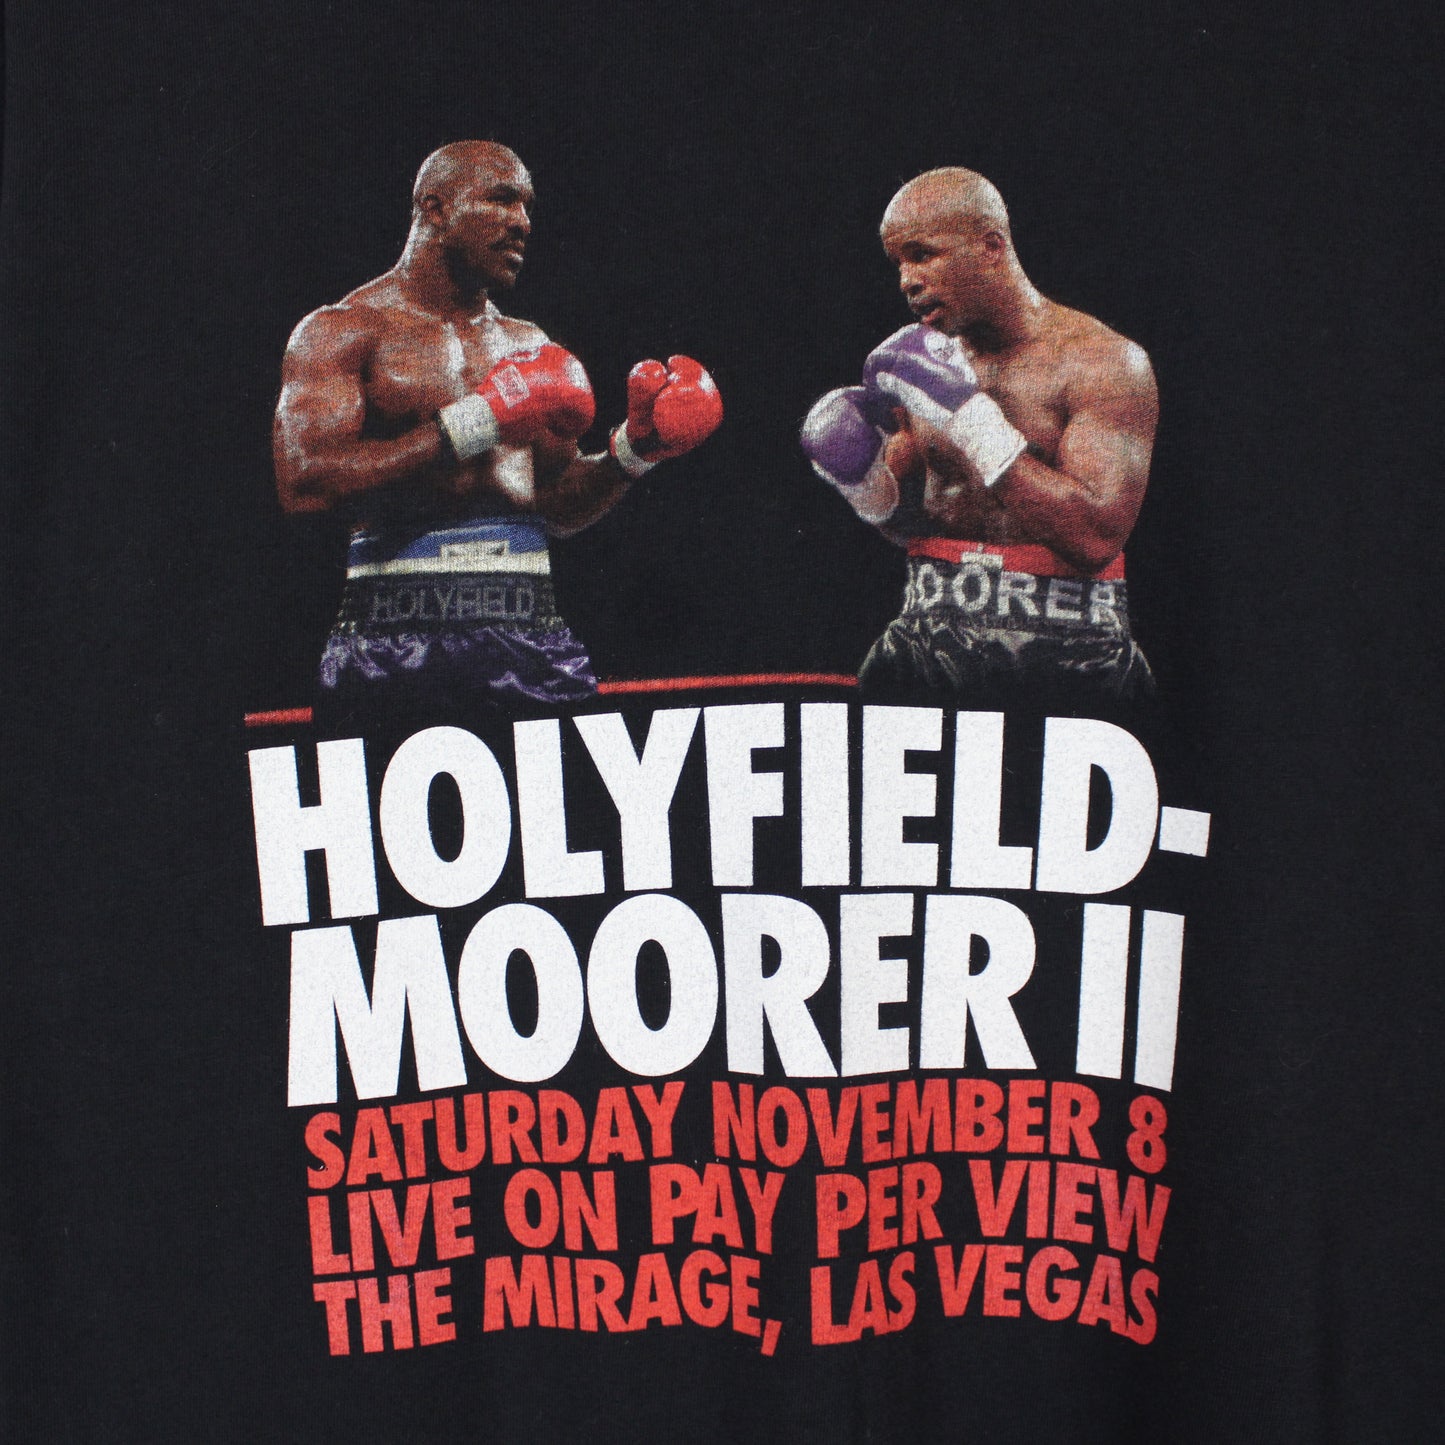 Vintage 1997 Holyfield vs Moorer II Boxing Tee - XL